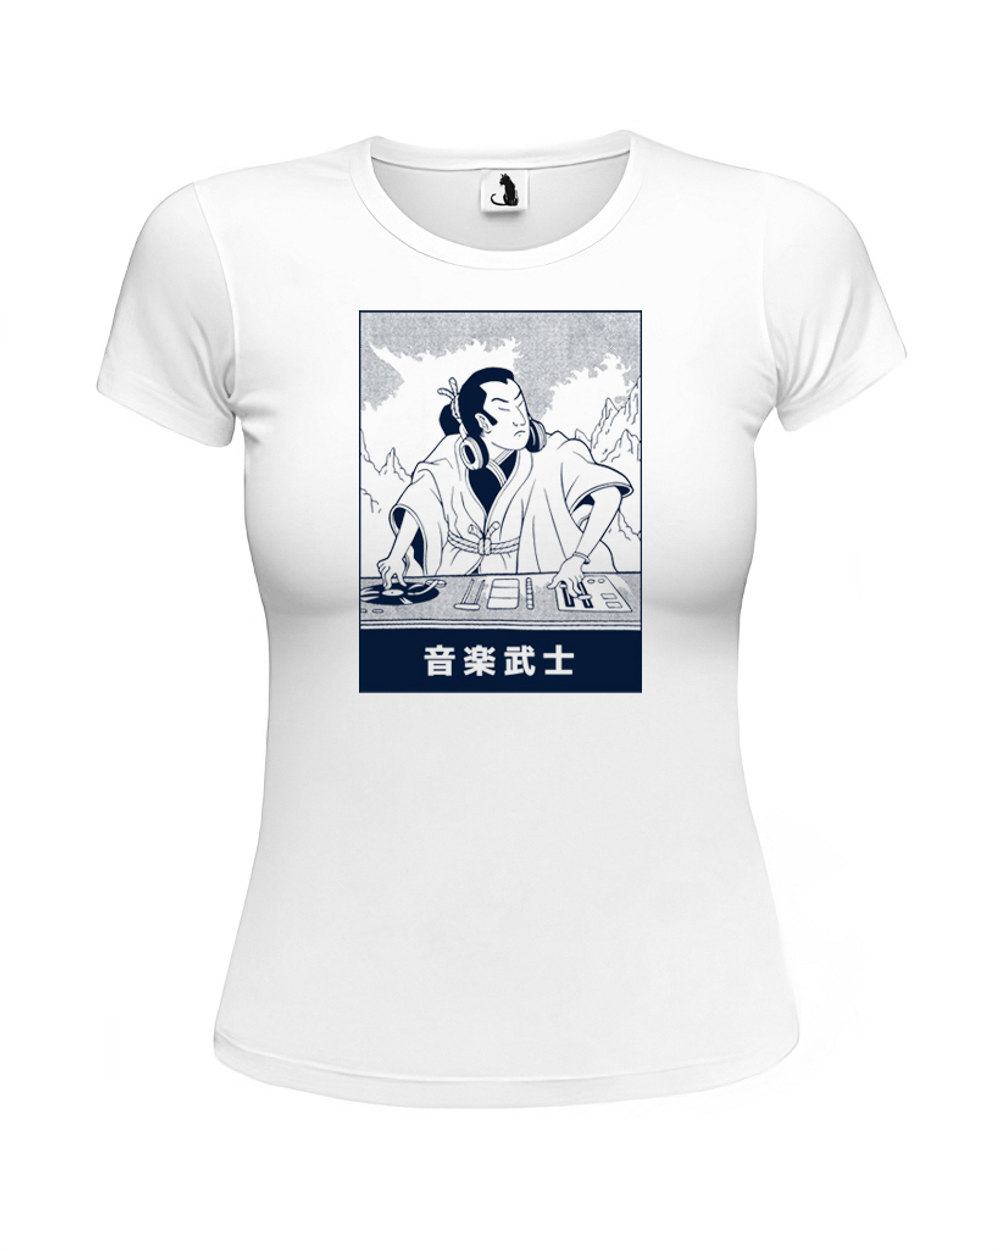 Футболка Диджей-самурай женская приталенная белая с синим рисунком